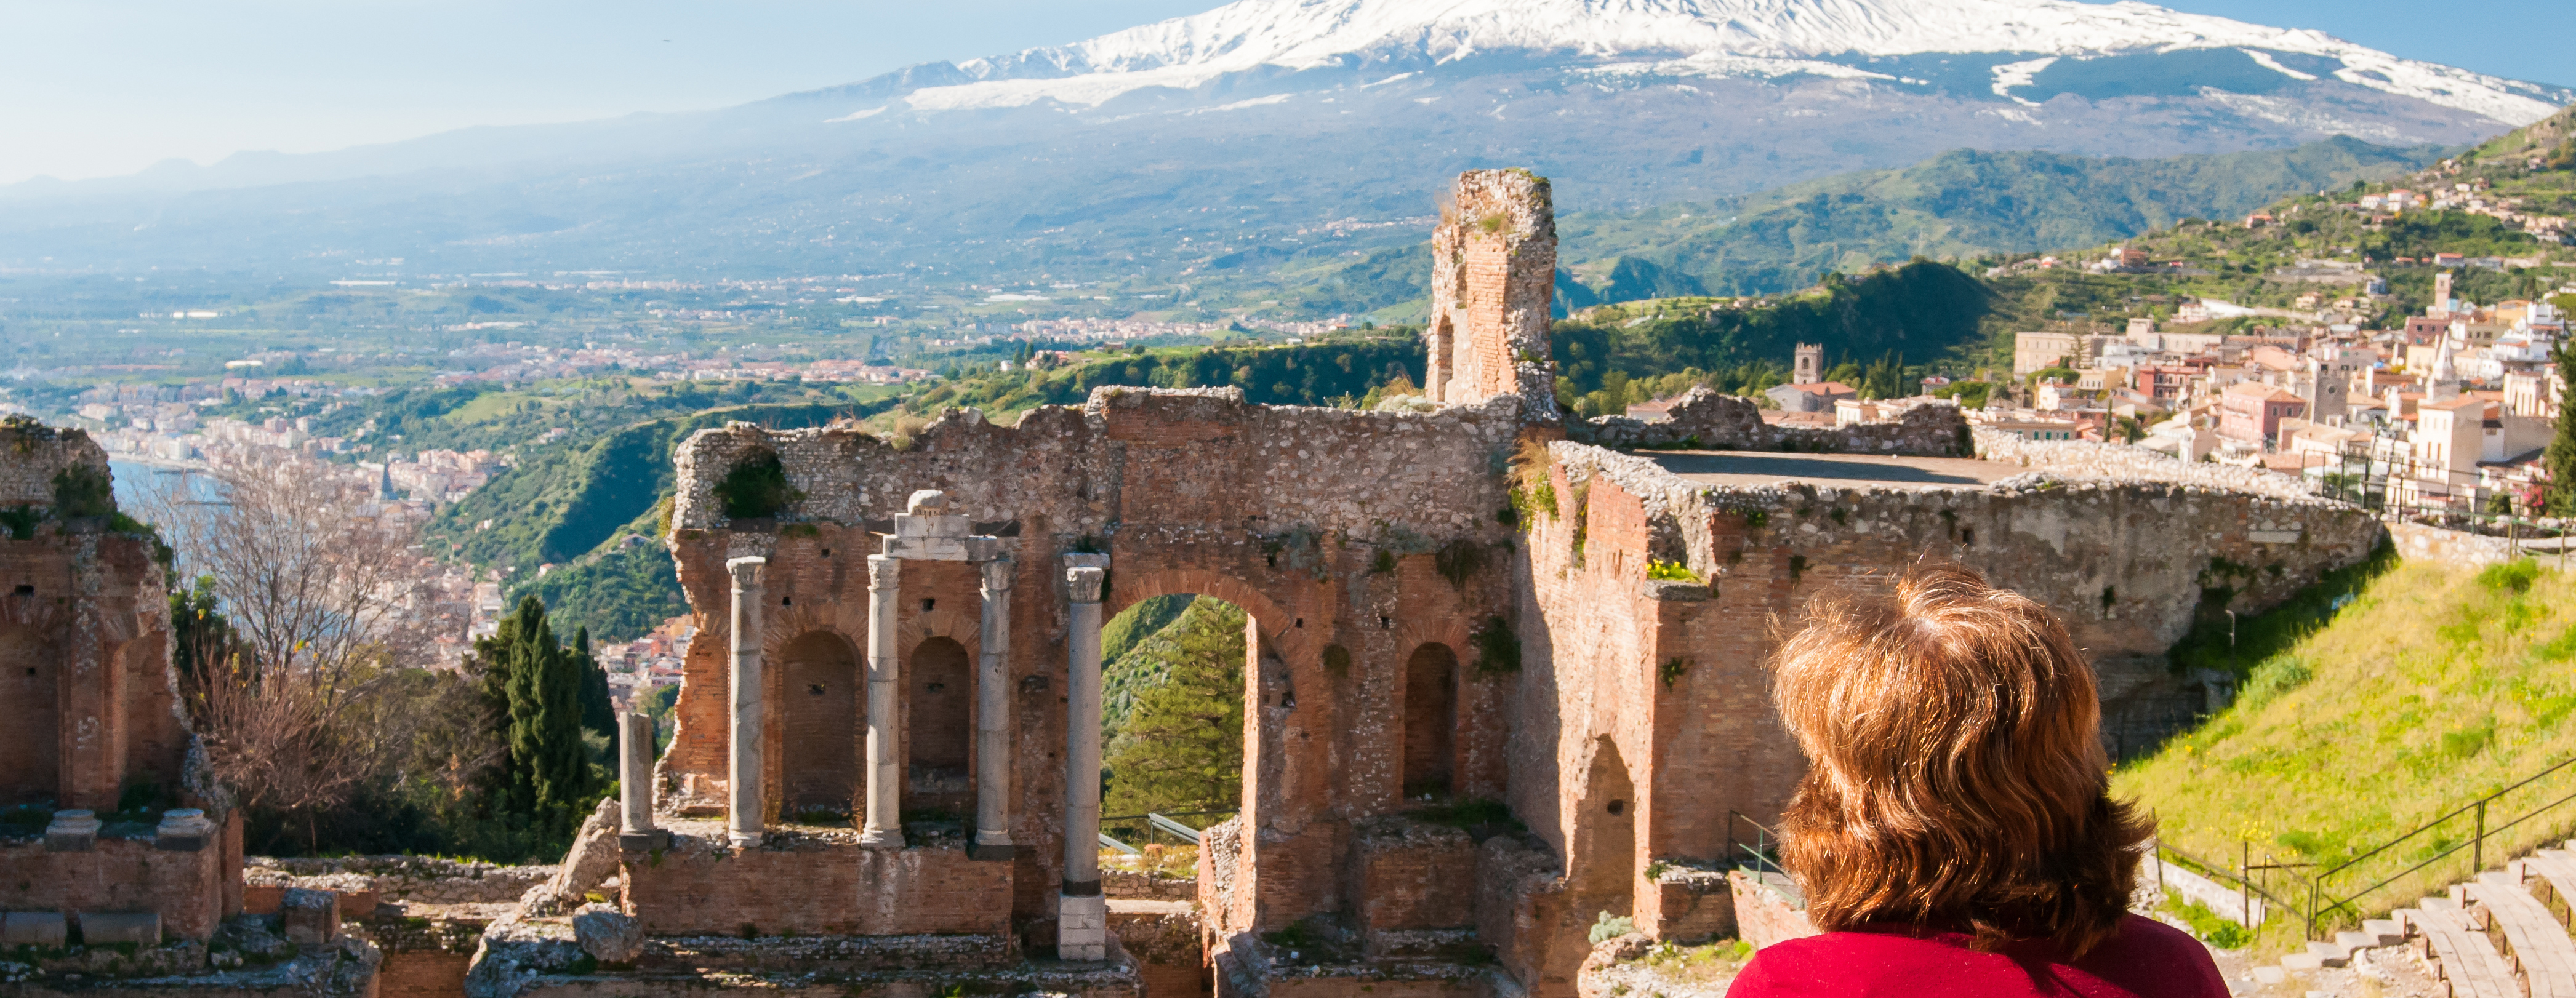 Turist i Taormina på Sicilien som blickar ut över amfiteatern och vulkanen Etna.